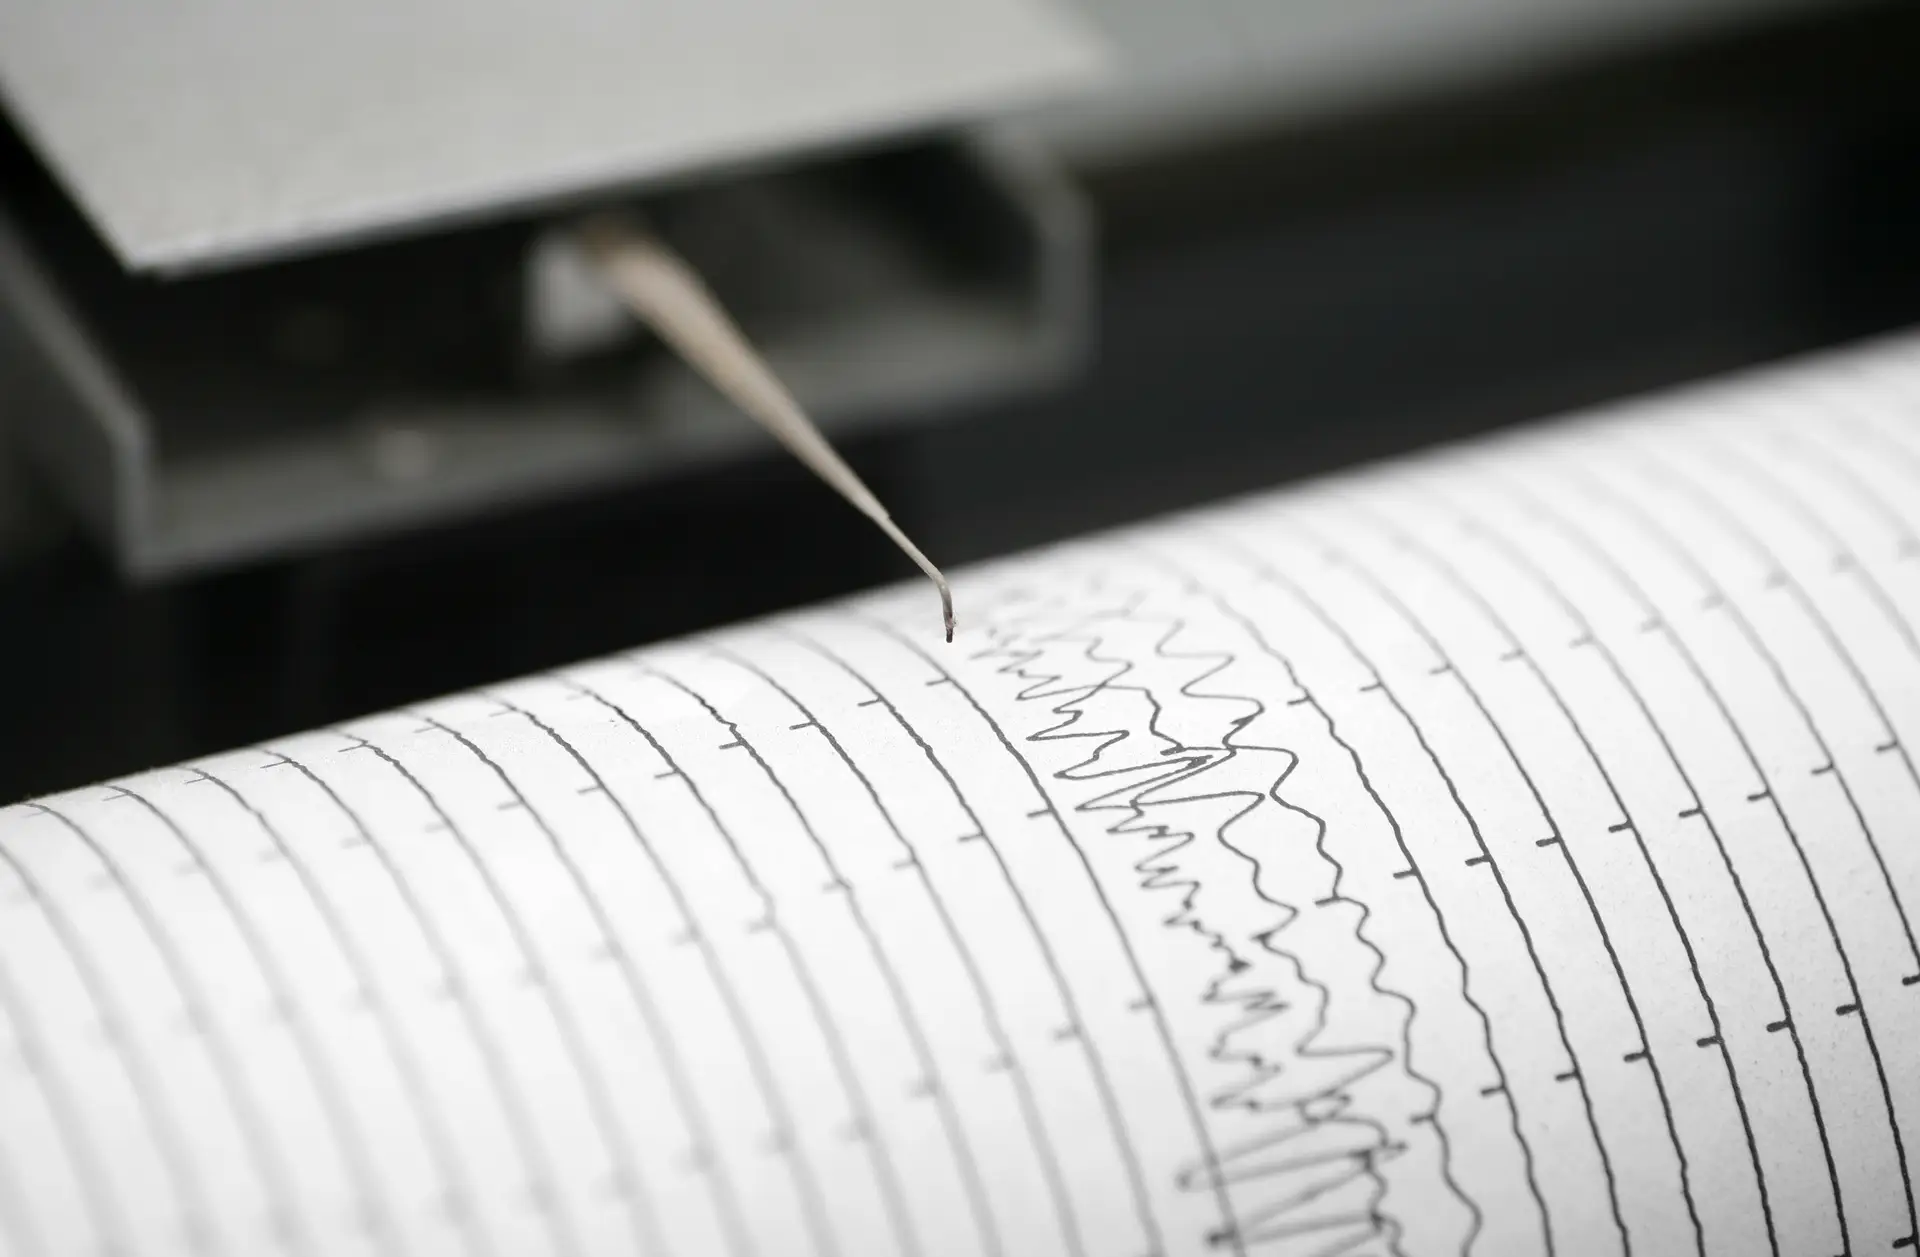 Sismo de magnitude 2,1 na escala de Richter sentido na ilha Terceira